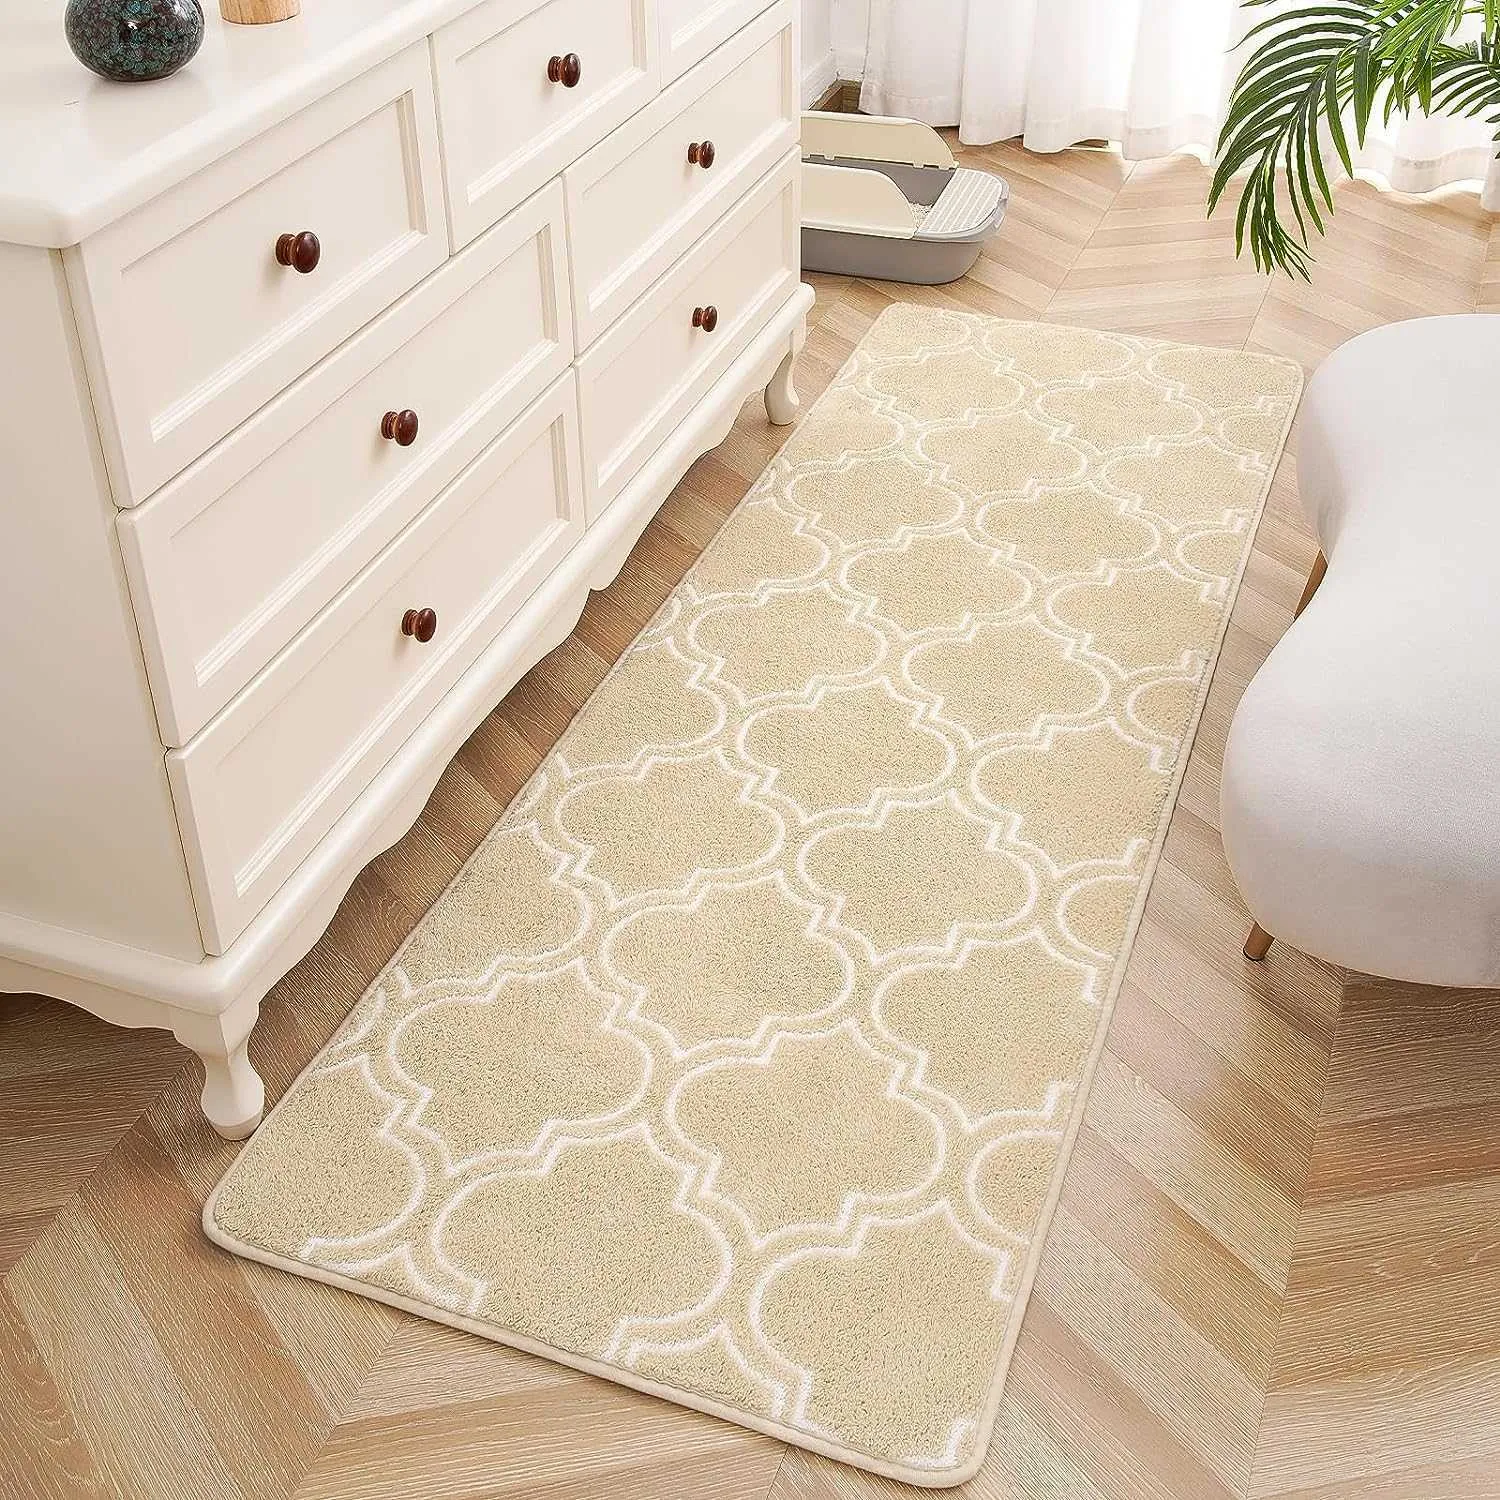 Flauschiges marokkanisches Plaid, das auf den Teppich des Schlafzimmers gelegt wird, kann problemlos mit P230907 verwendet werden